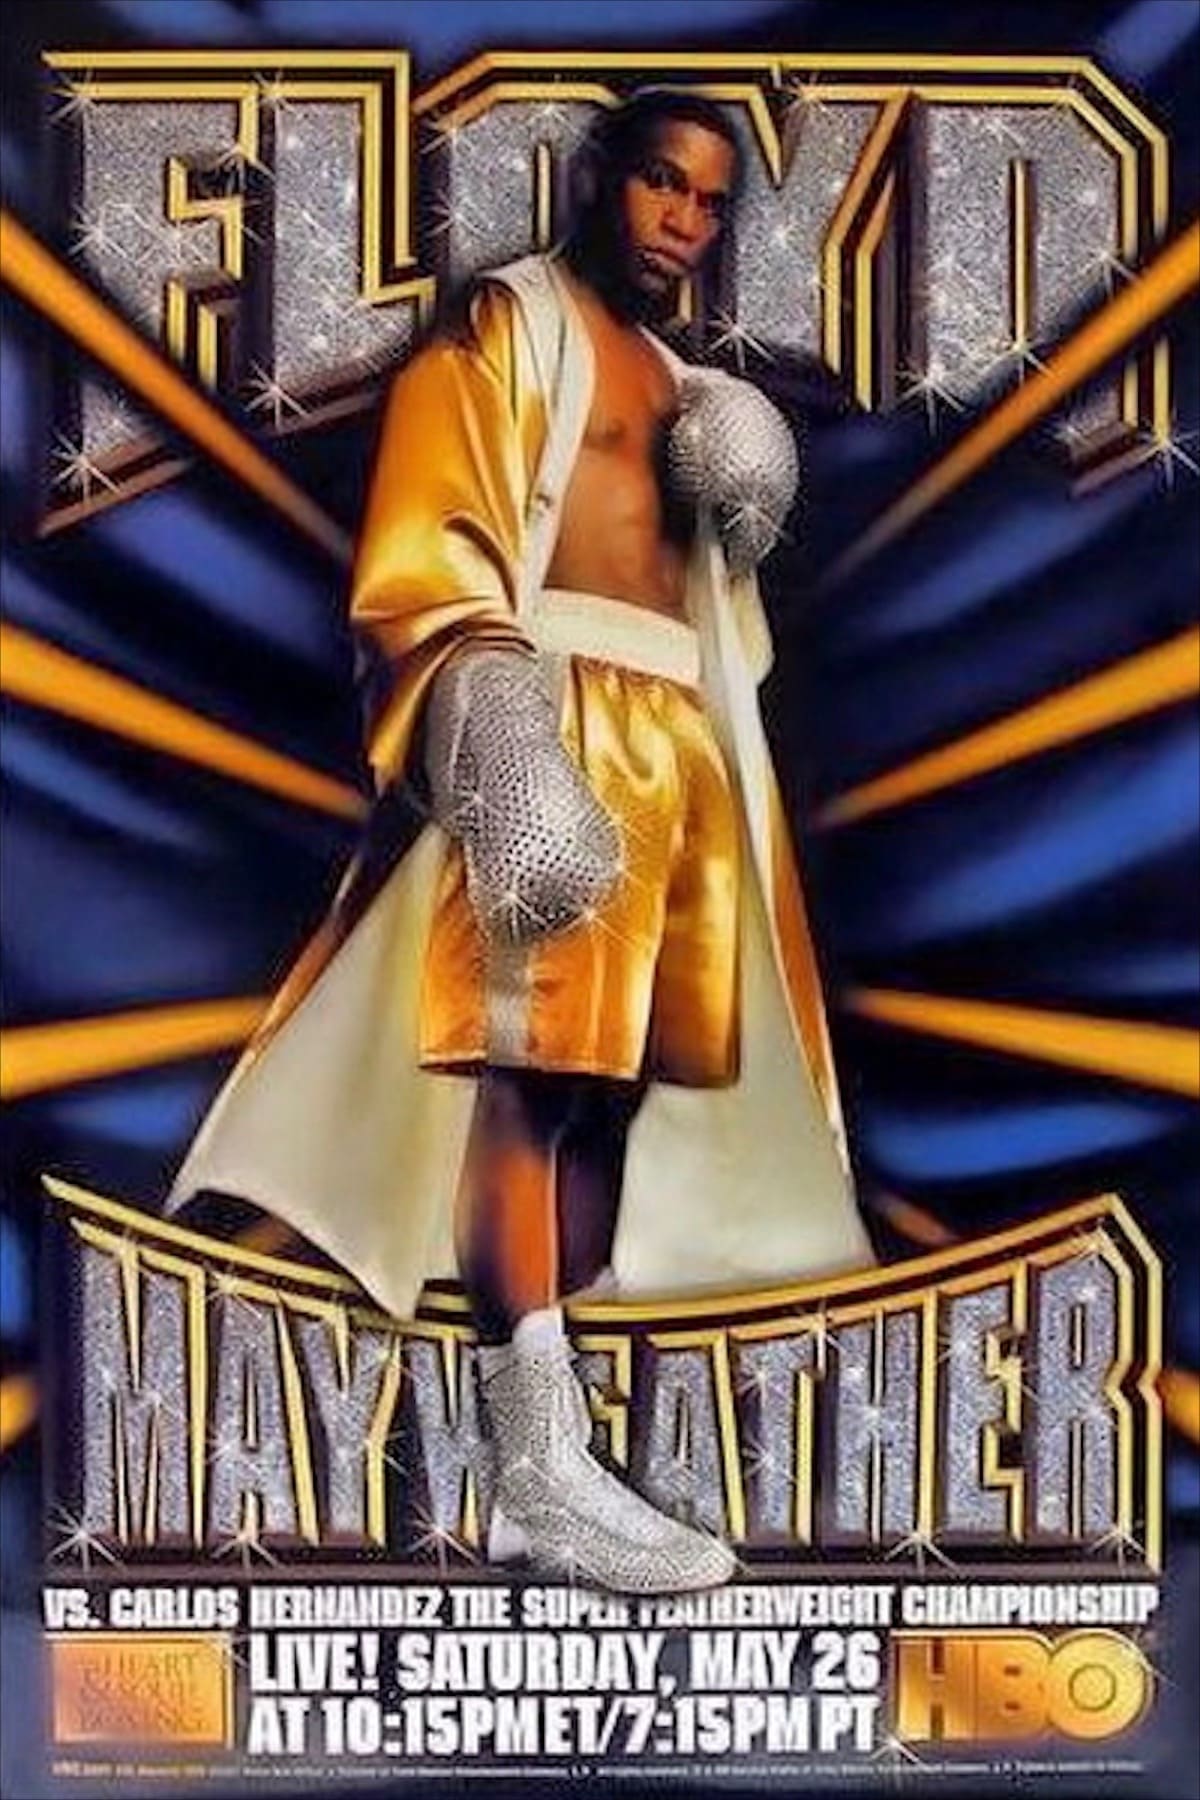 Floyd Mayweather Jr. vs. Carlos Hernandez